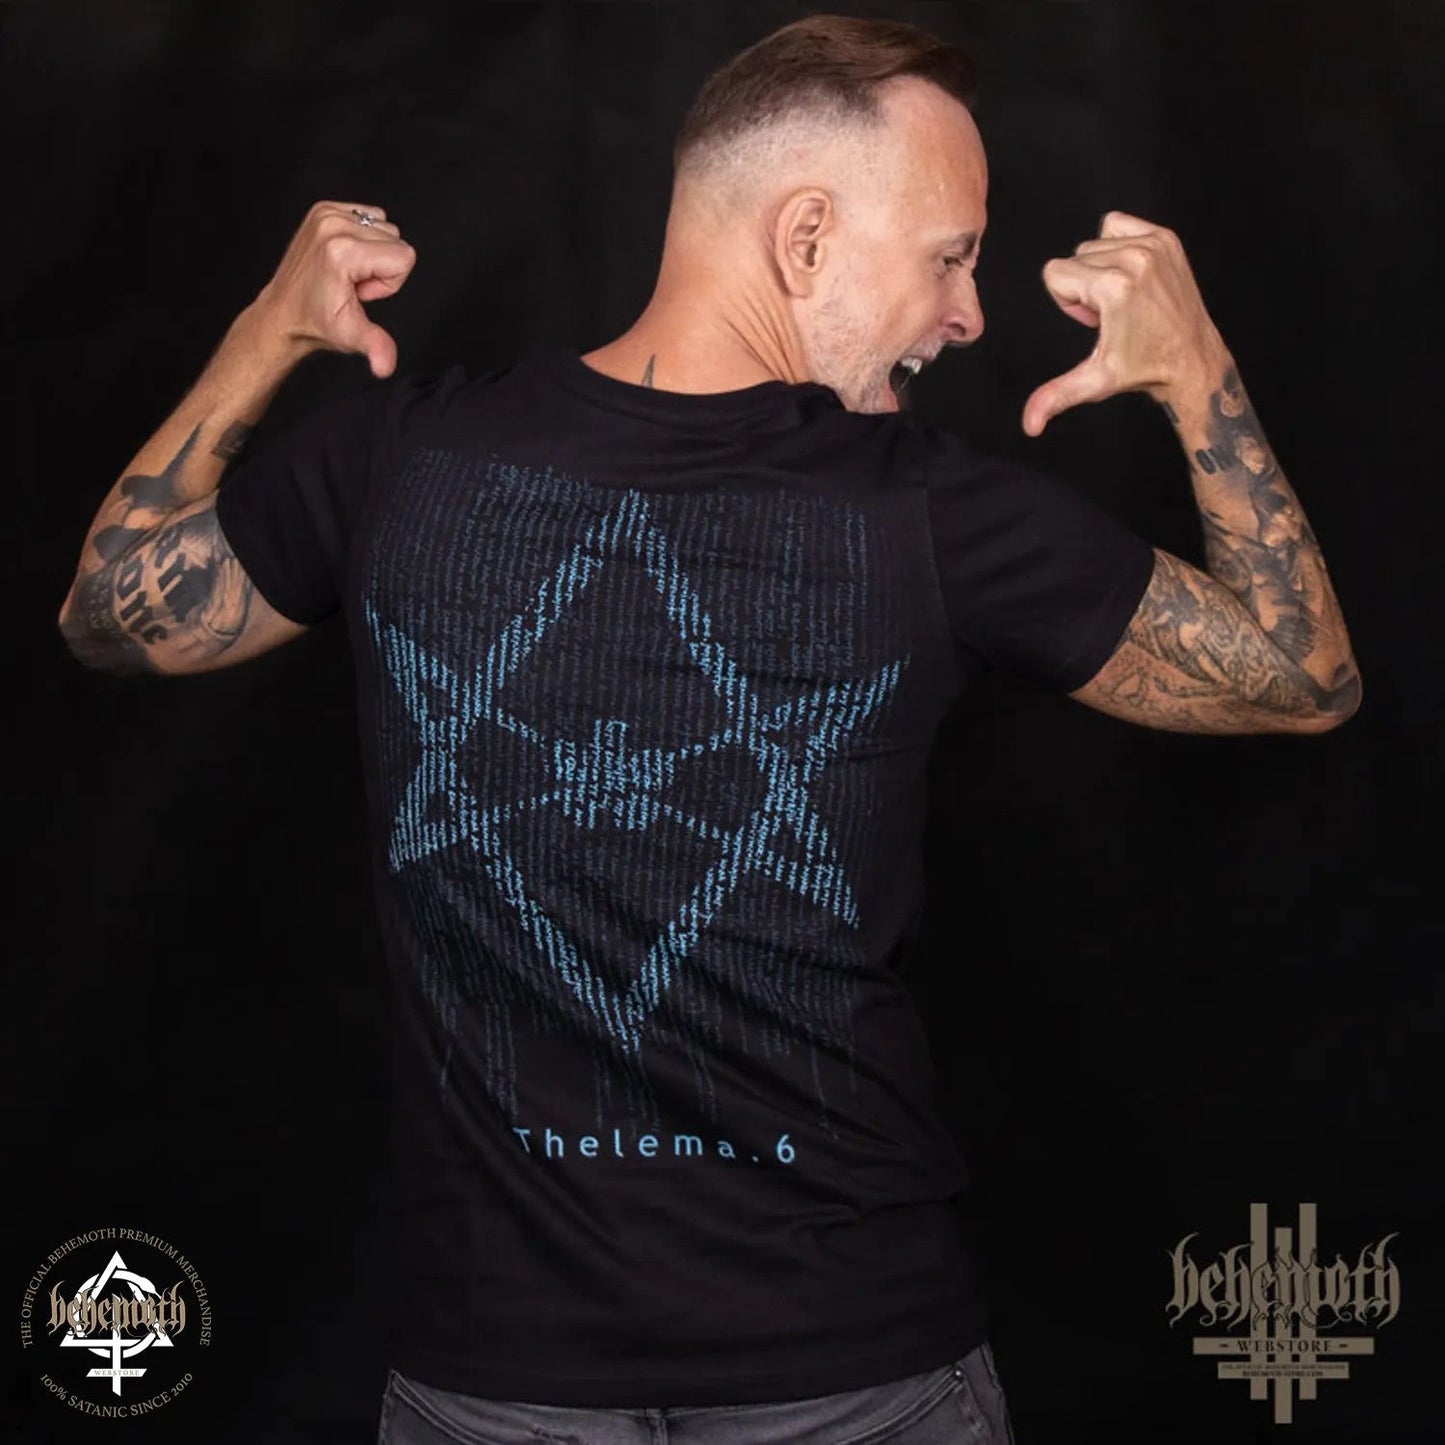 Behemoth 'Thelema.6' T-Shirt